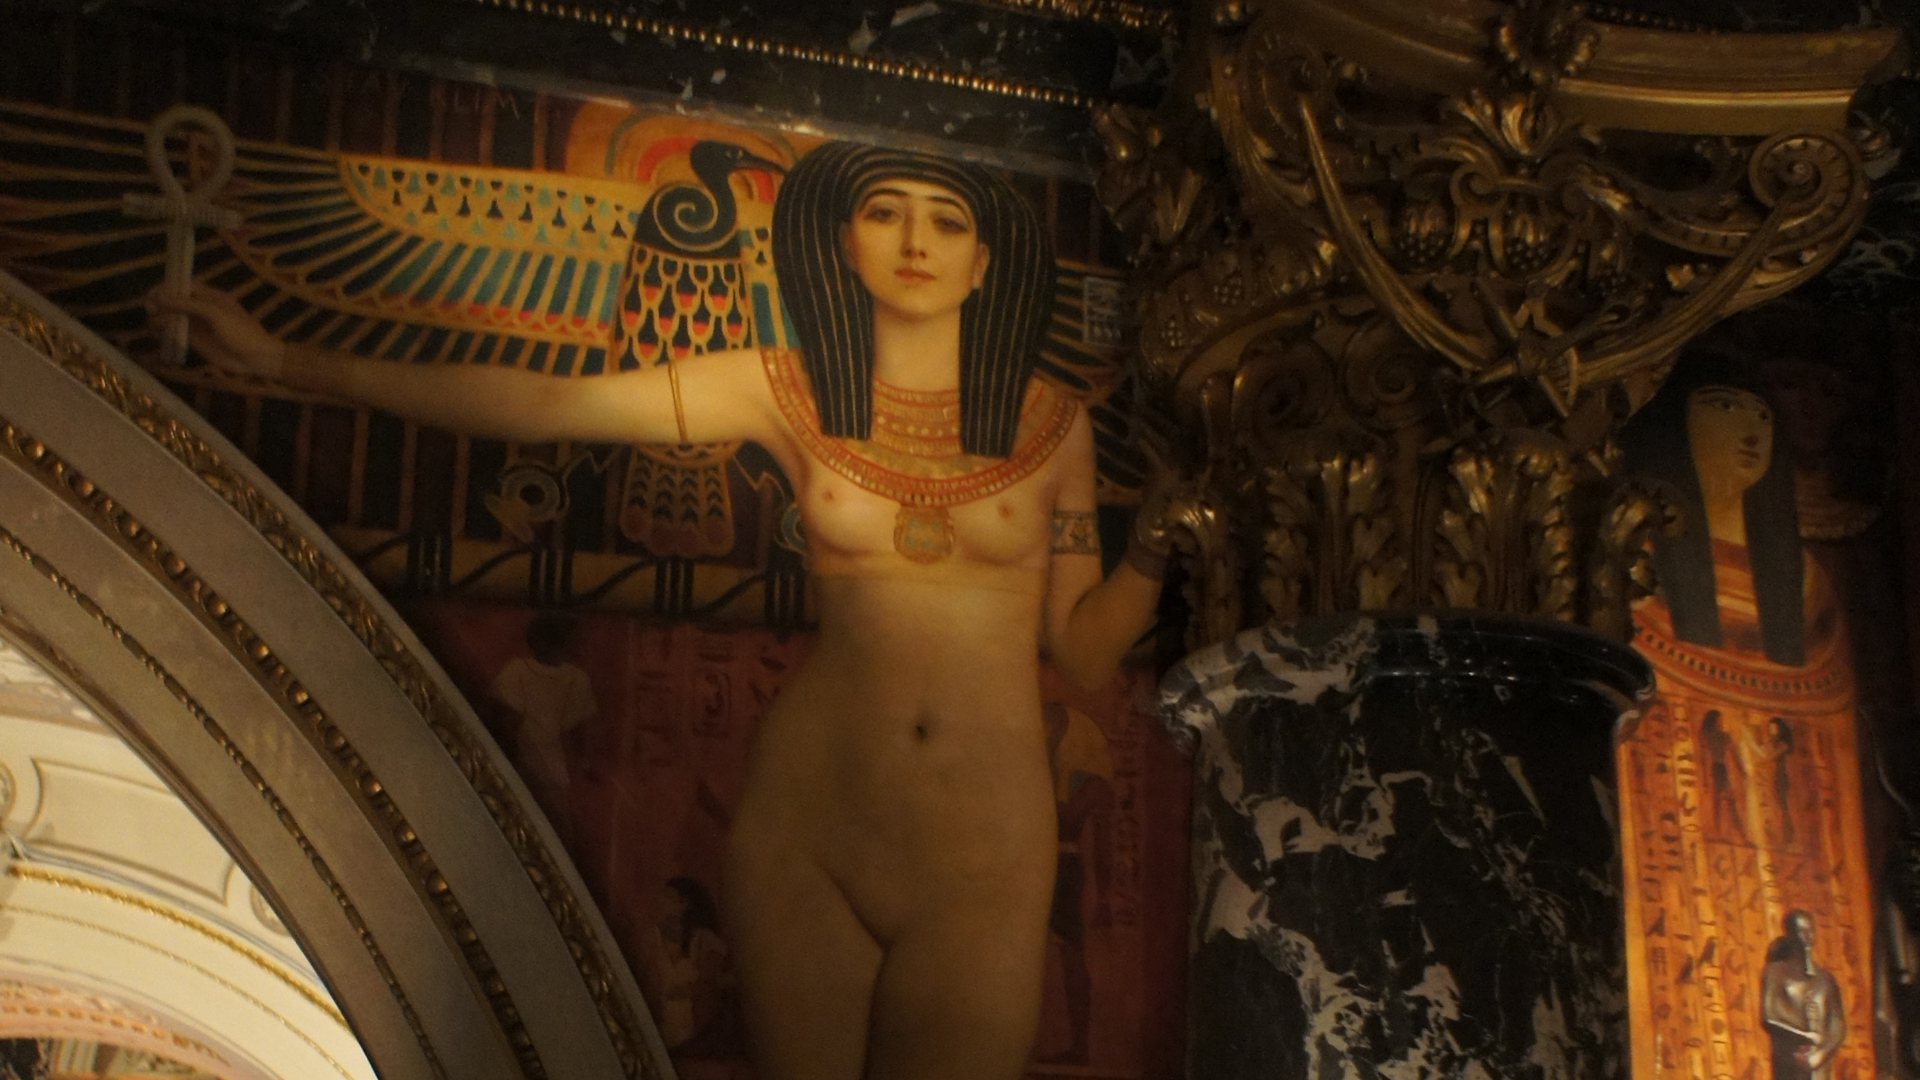 Fotostrecke Kunst 11: Gustav Klimt, Ernst Klimt und Franz Matsch: Zyklus Altitalienische Kunst, griechische bzw. ägyptische Göttin